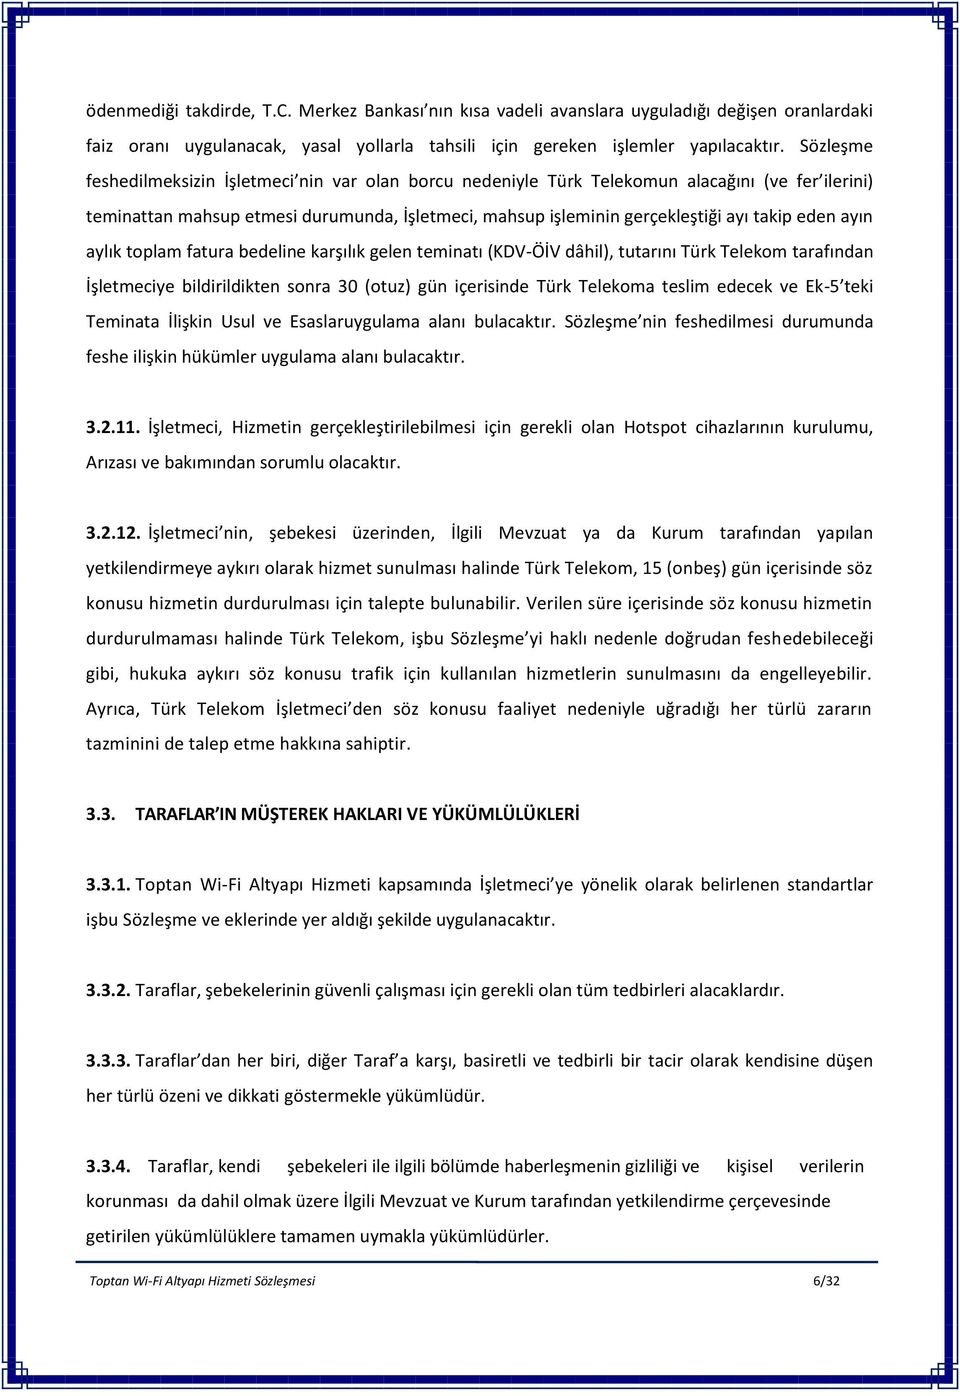 ayın aylık toplam fatura bedeline karşılık gelen teminatı (KDV-ÖİV dâhil), tutarını Türk Telekom tarafından İşletmeciye bildirildikten sonra 30 (otuz) gün içerisinde Türk Telekoma teslim edecek ve